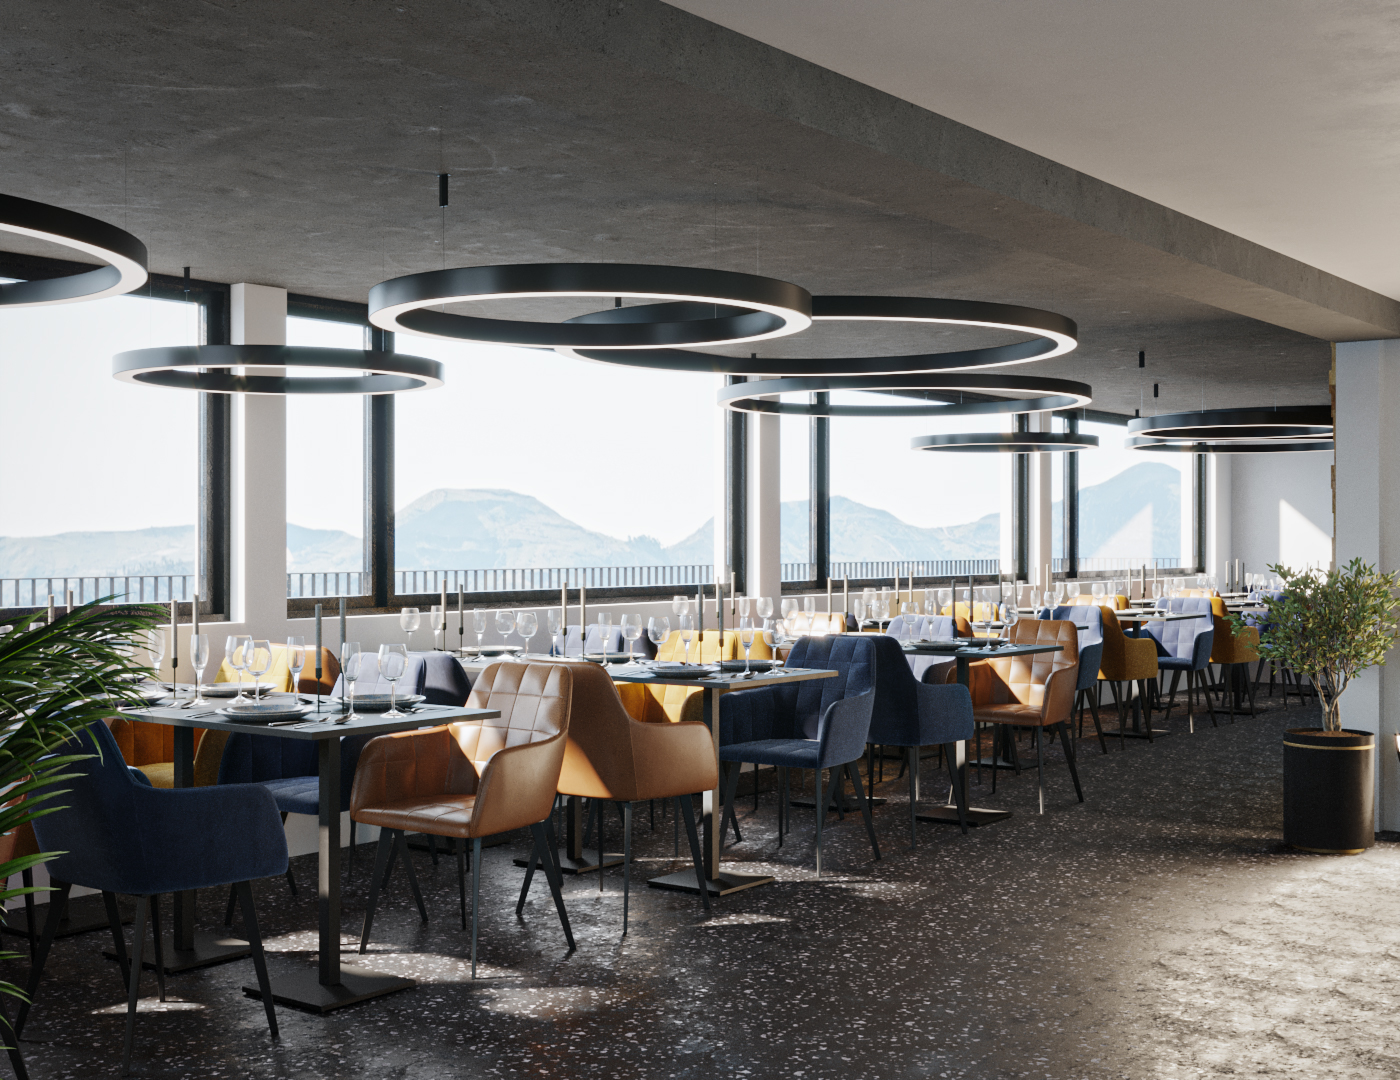 Einzelansicht der Visualisierung der Innenarchitektur und Ladenbau für das Alp Restaurant bei Rüti beim Zürichsee.